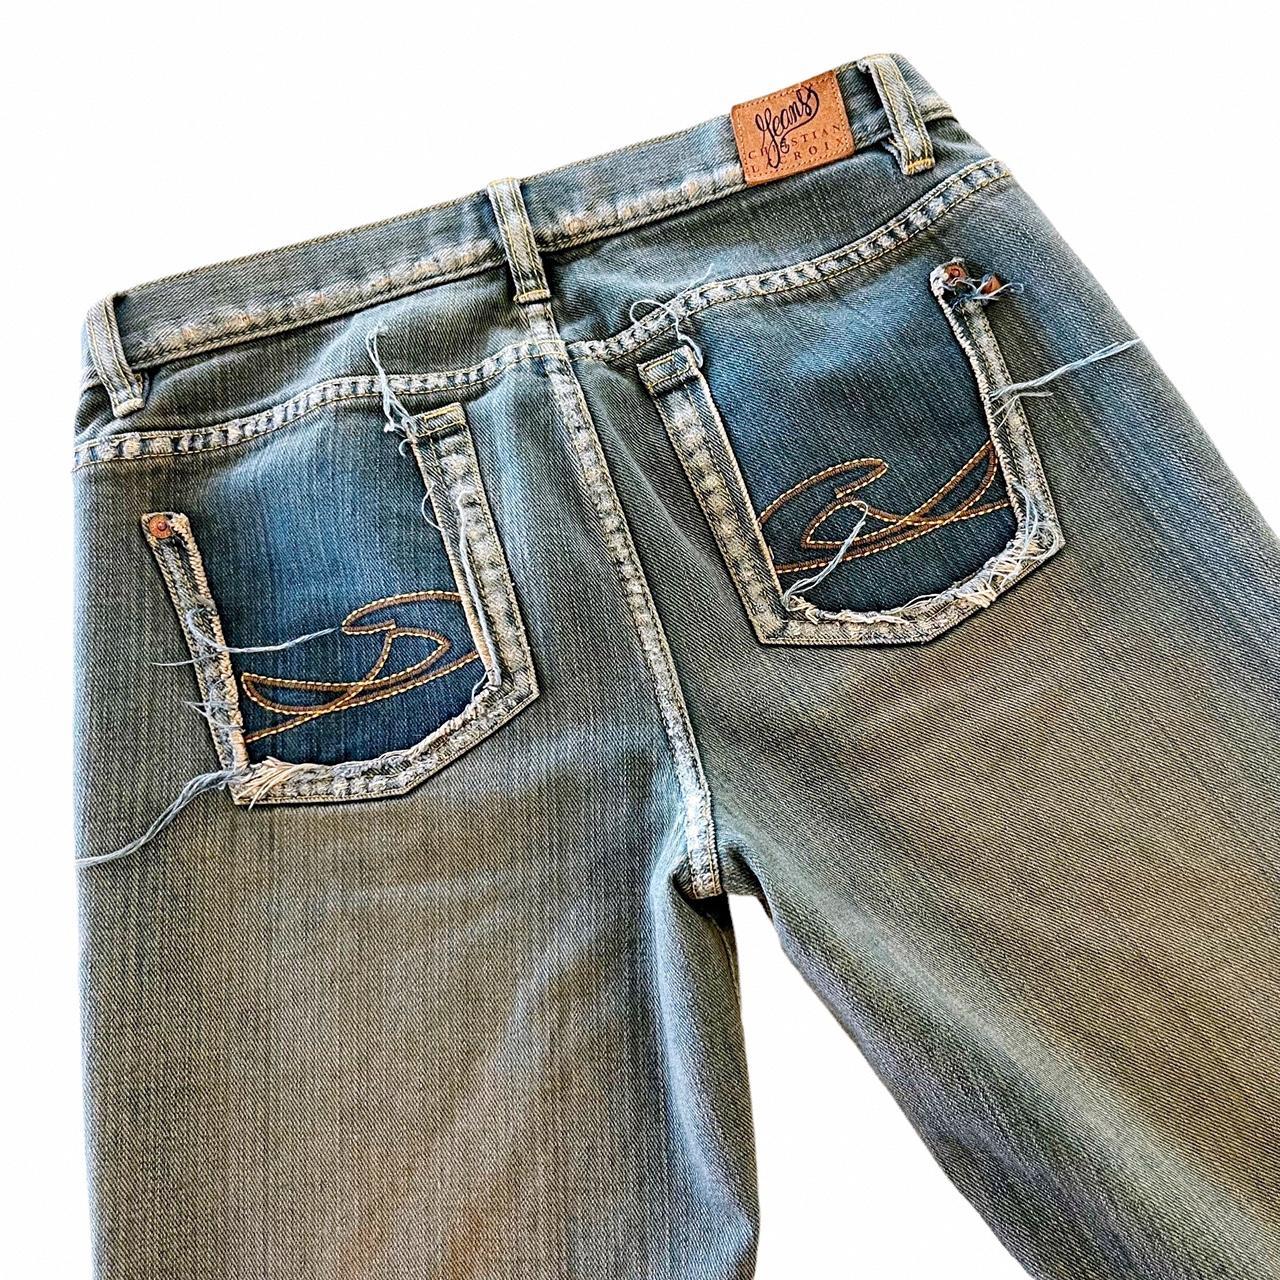 Y2K Christian Lacroix Jeans | unreal vintage... - Depop